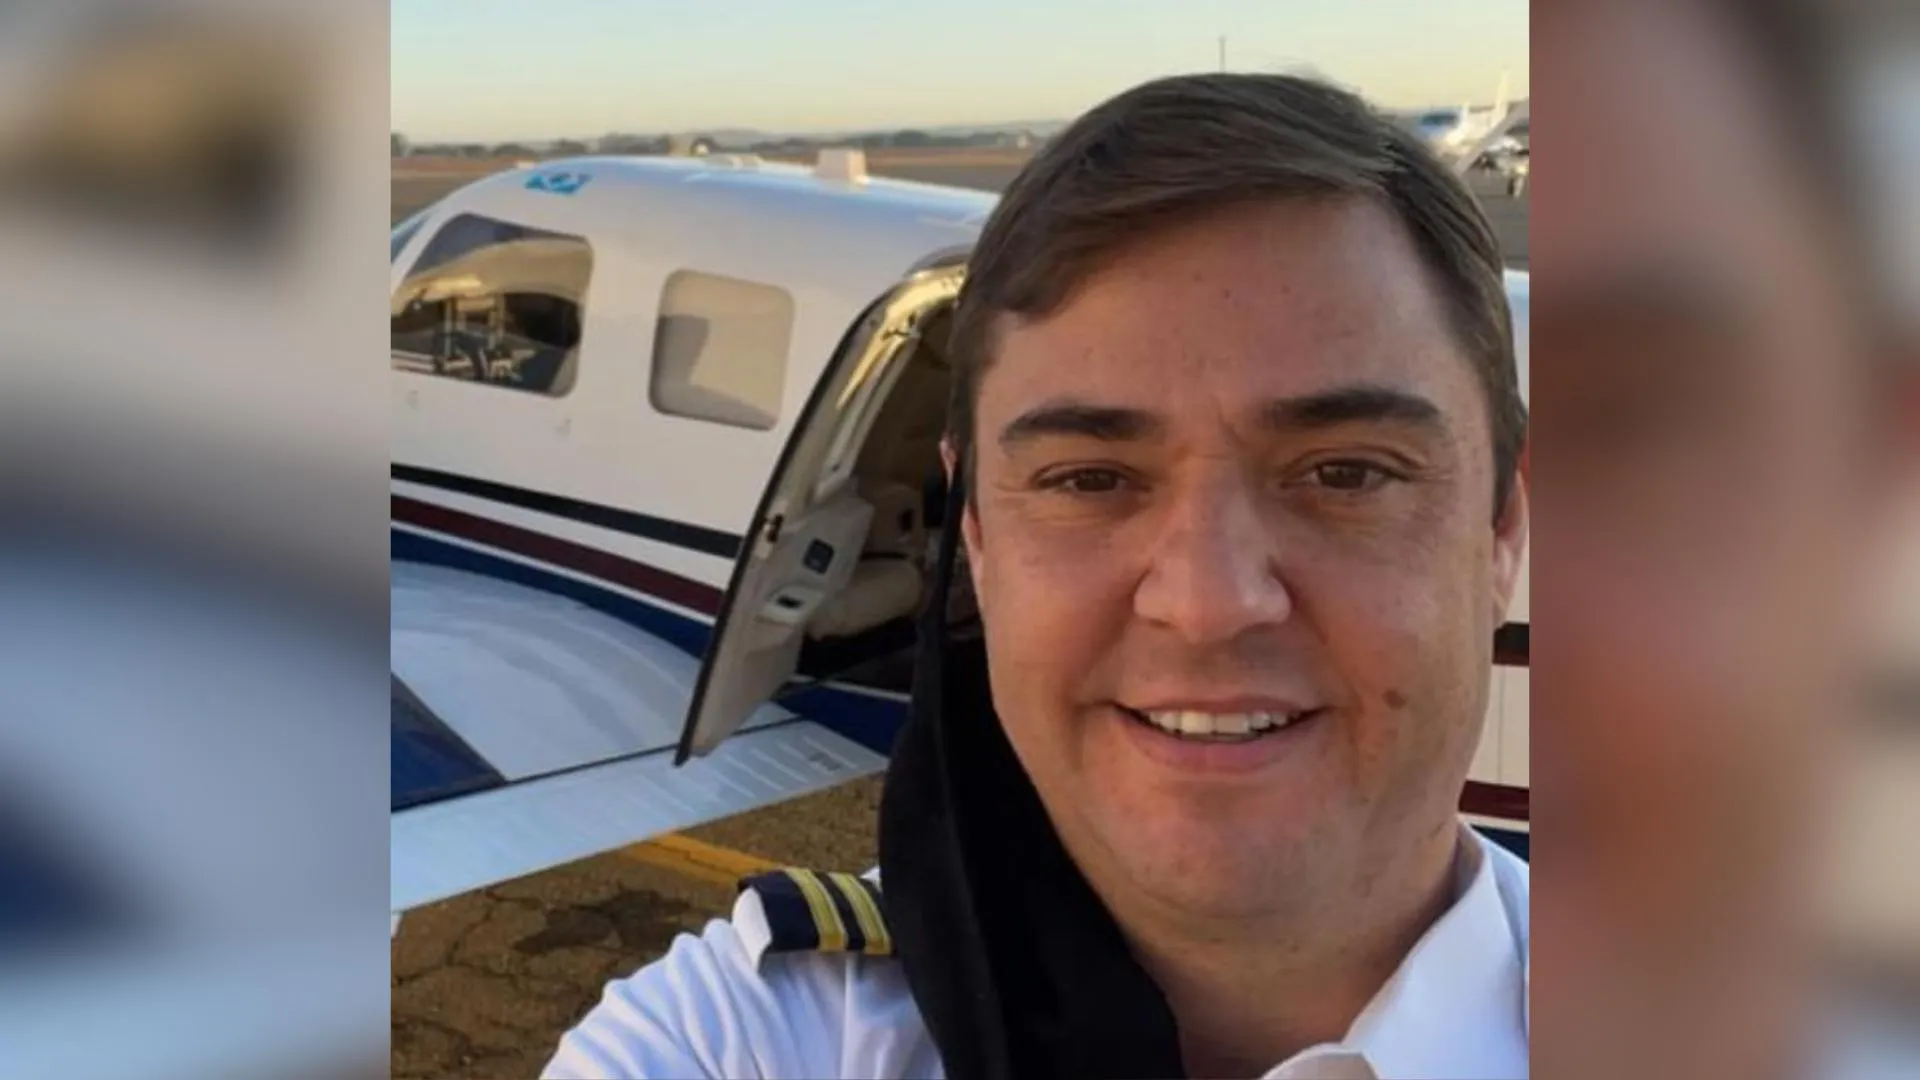 Piloto goiano desaparece após queda de avião em São Paulo